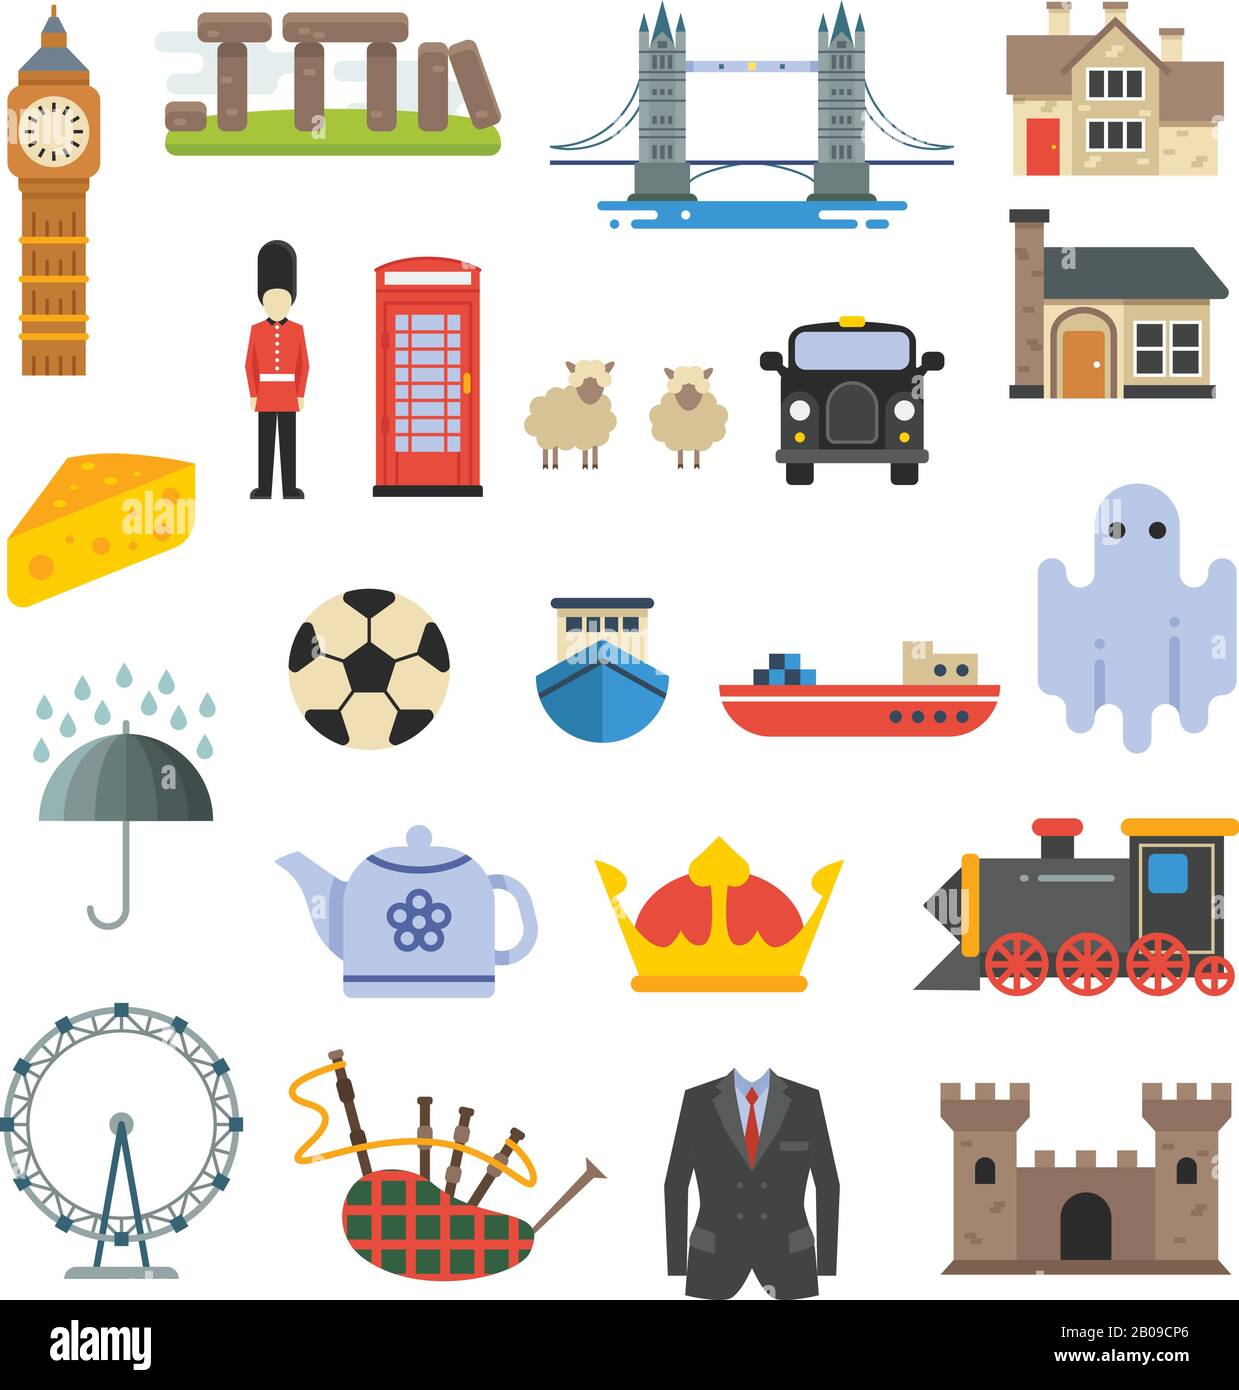 Inghilterra, gran bretagna, regno unito, simboli vettoriali. British Tower e Big ben, insieme di elementi della cultura inglese illustrazione Illustrazione Vettoriale